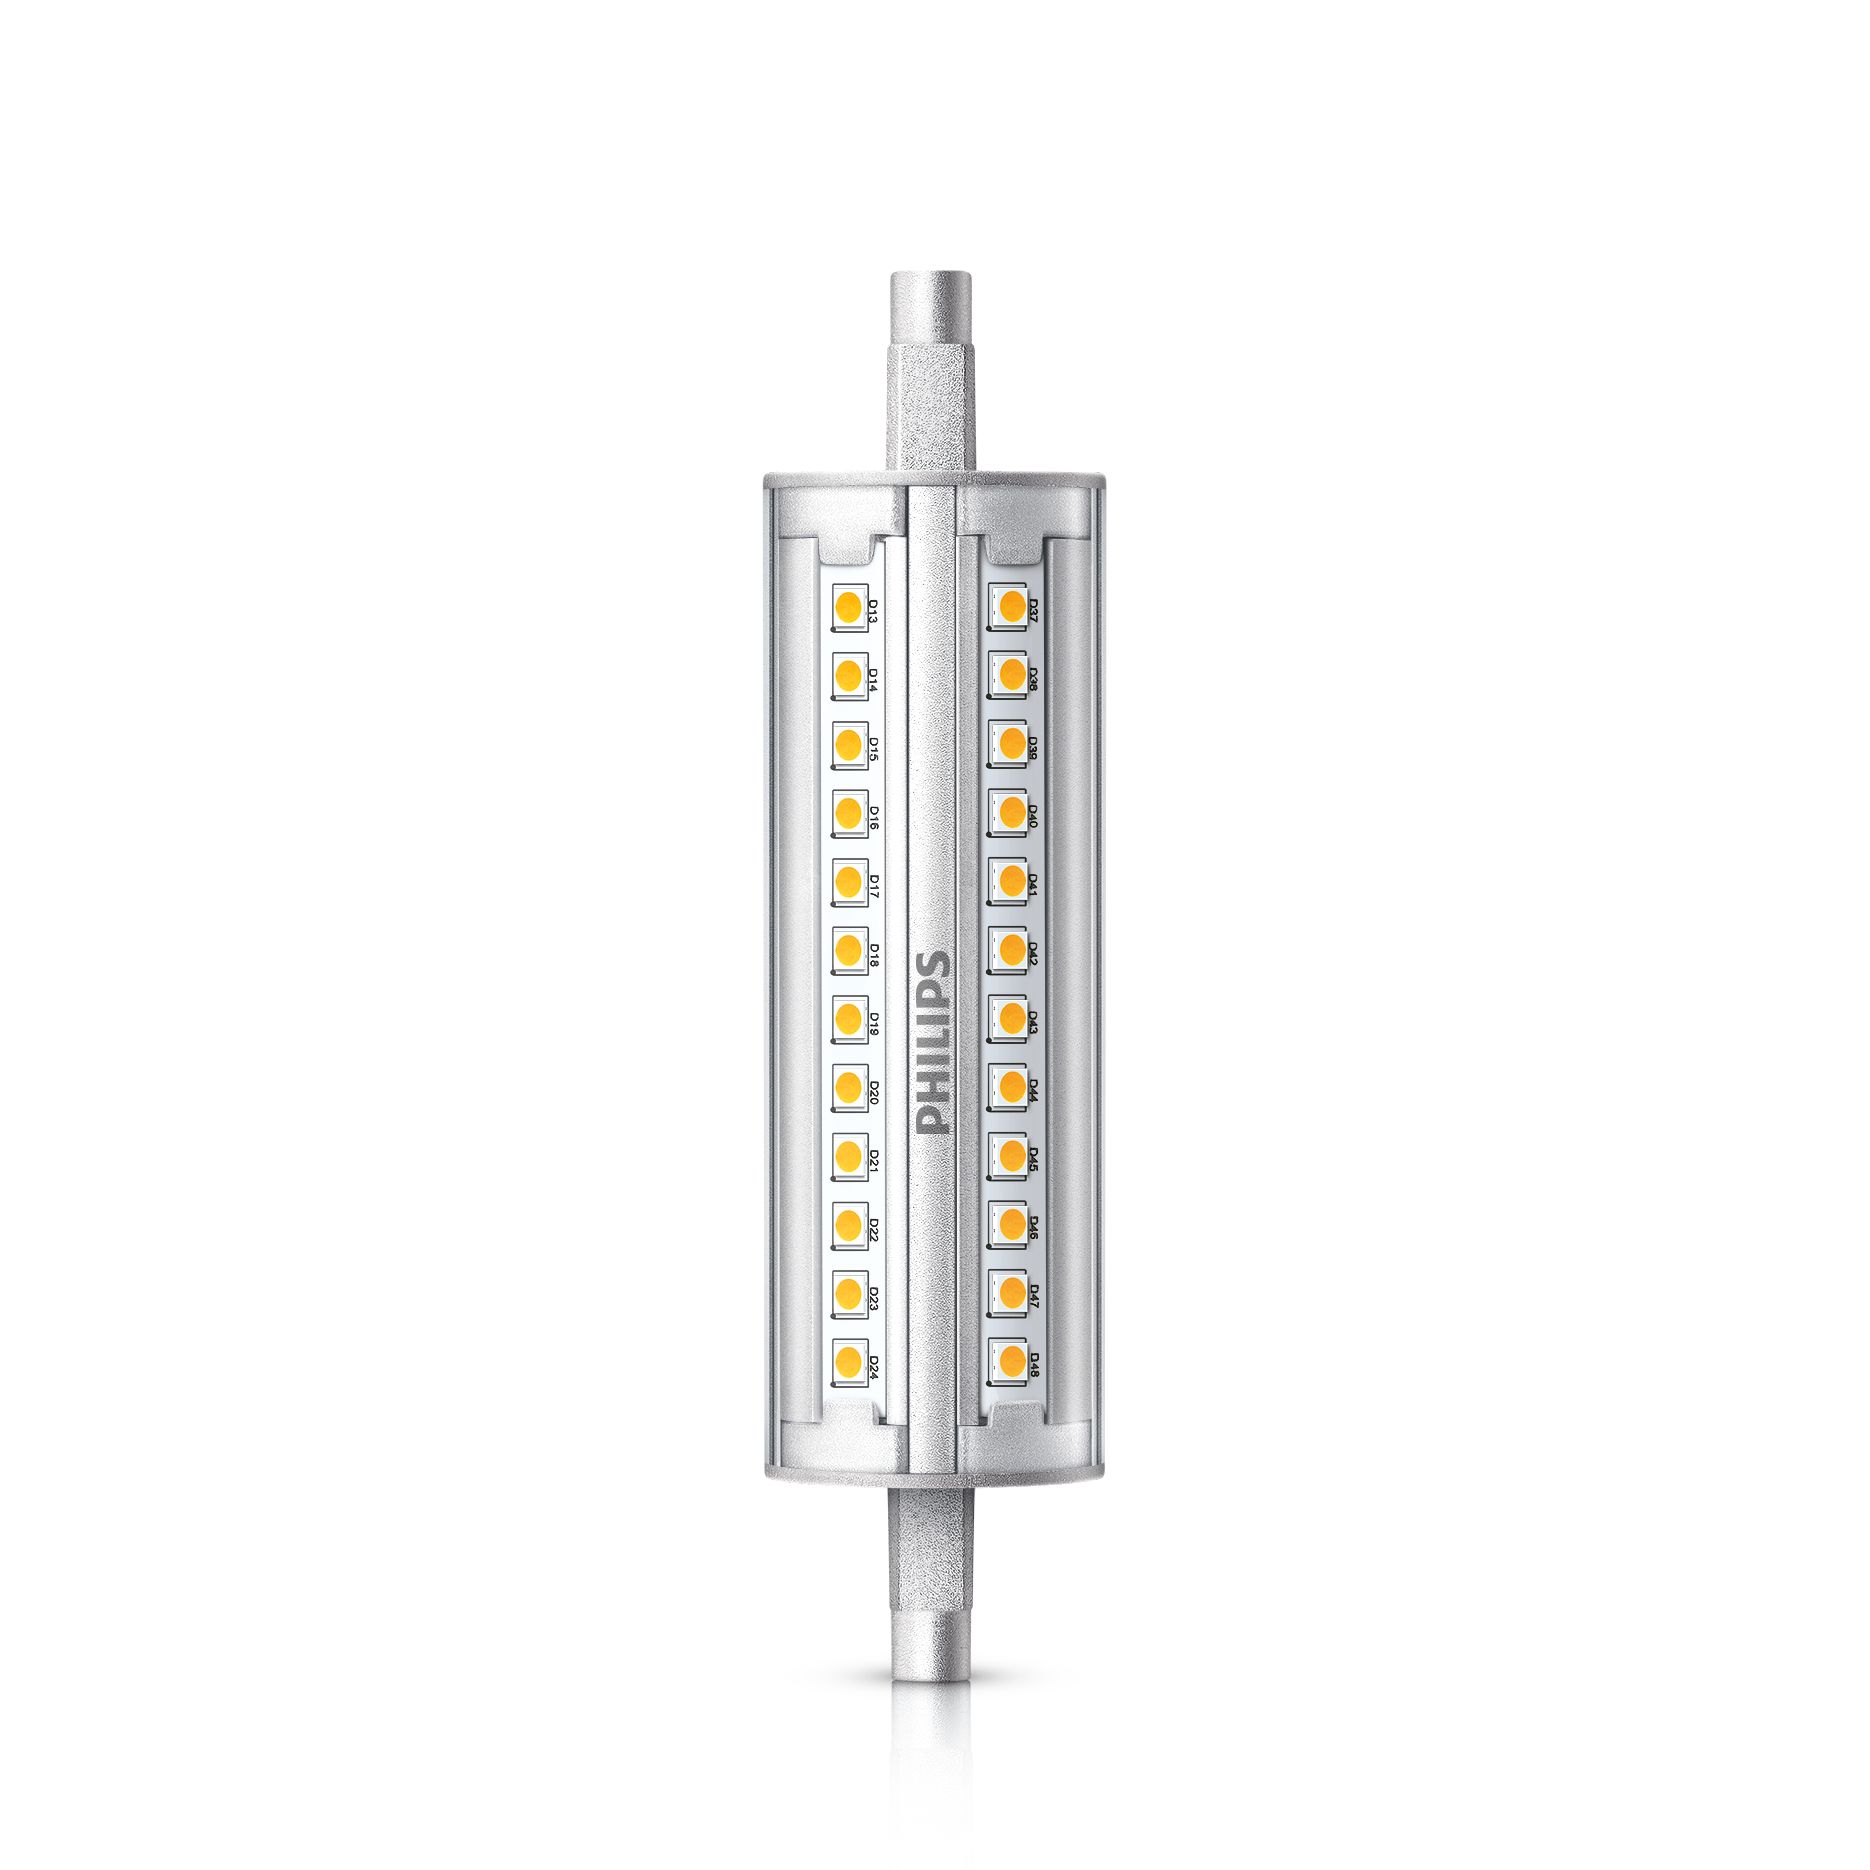 LEDlinear | 5011000 | Philips lighting